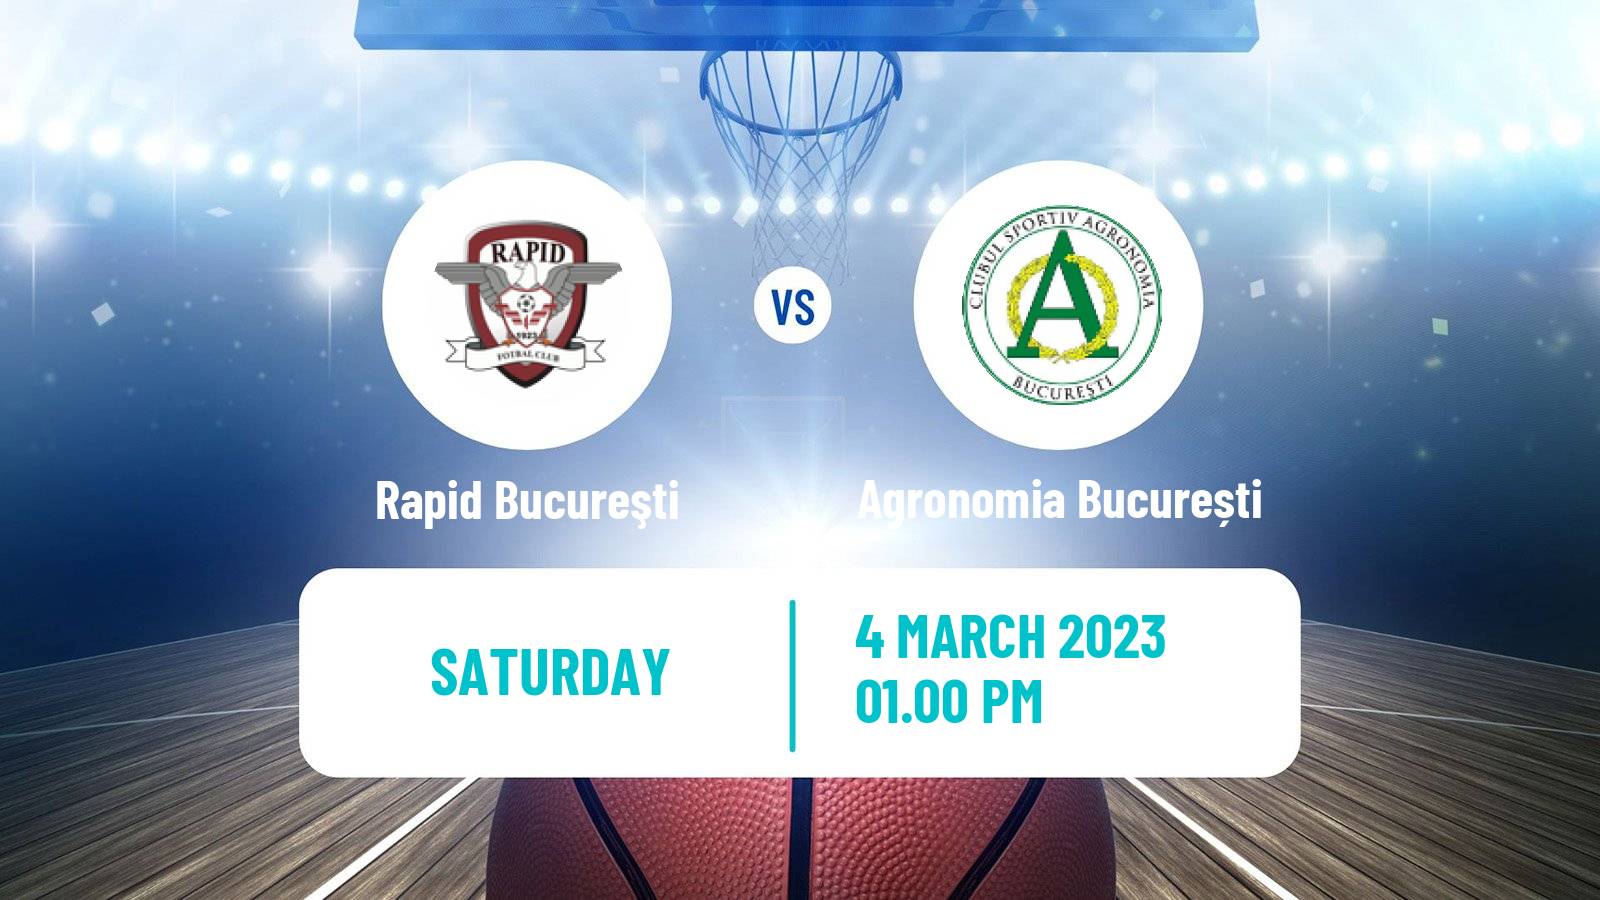 Basketball Romanian Liga National Basketball Women Rapid Bucureşti - Agronomia București